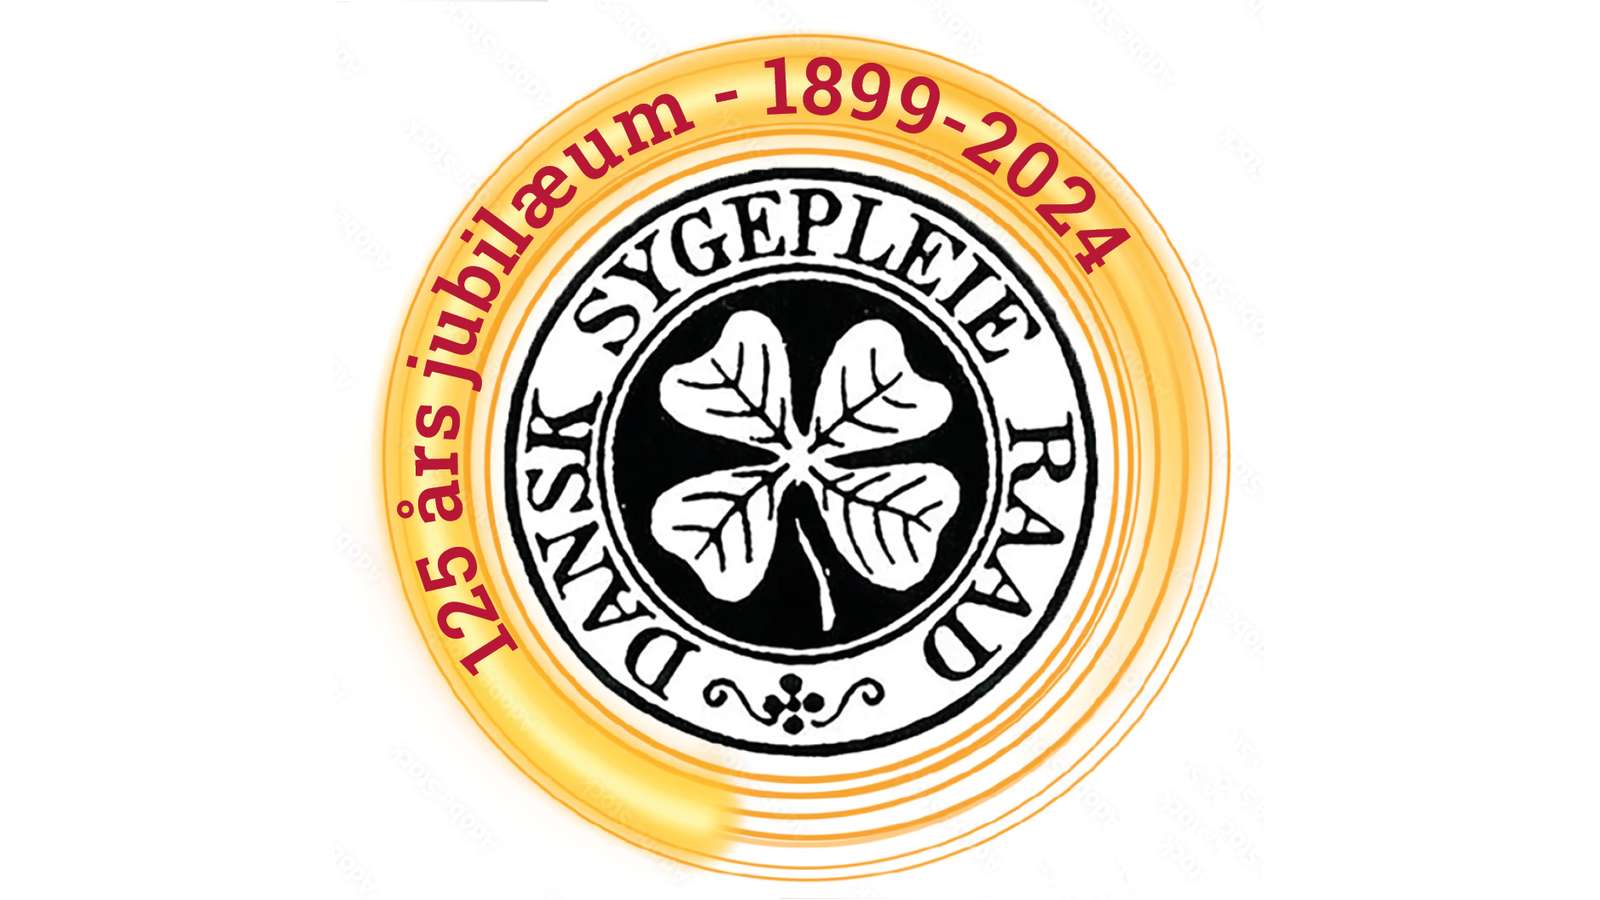 Jubilæumsring gammelt logo med tekst bred.png